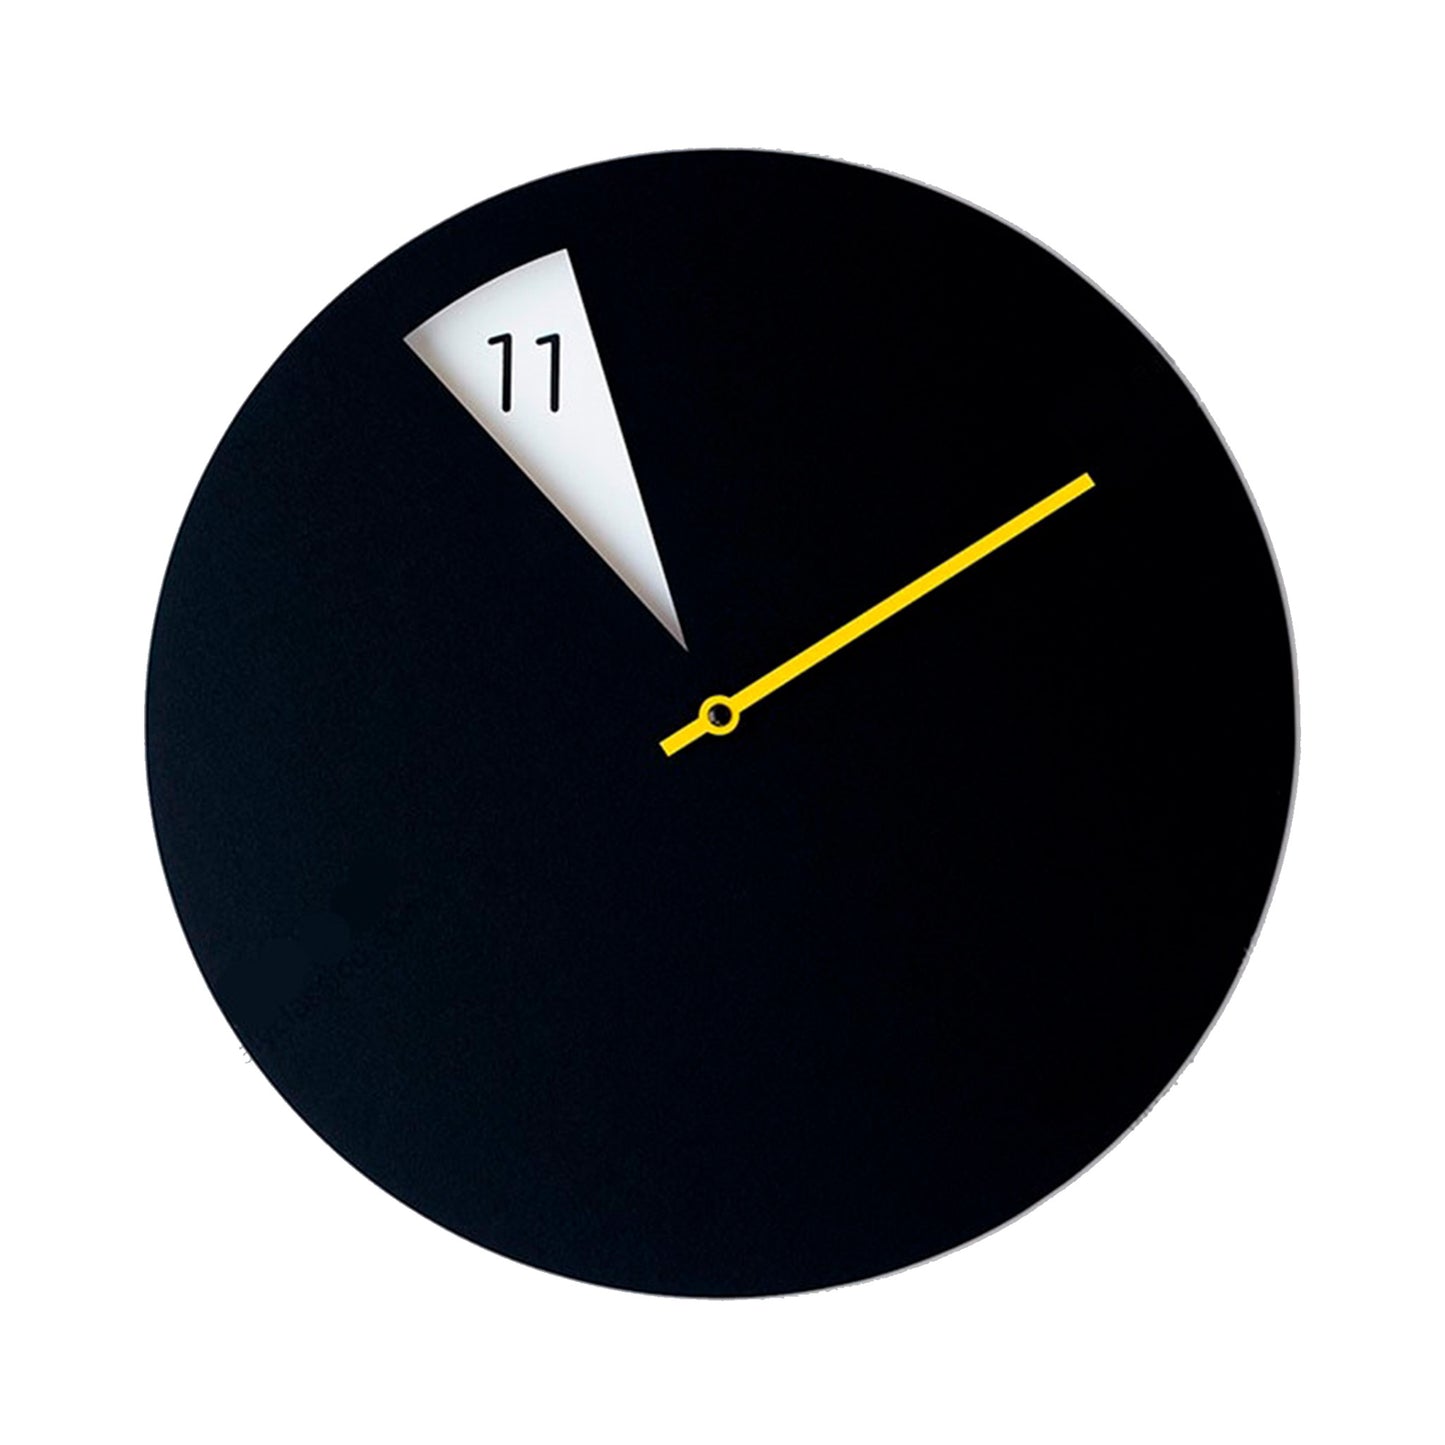 Black Wall Clock